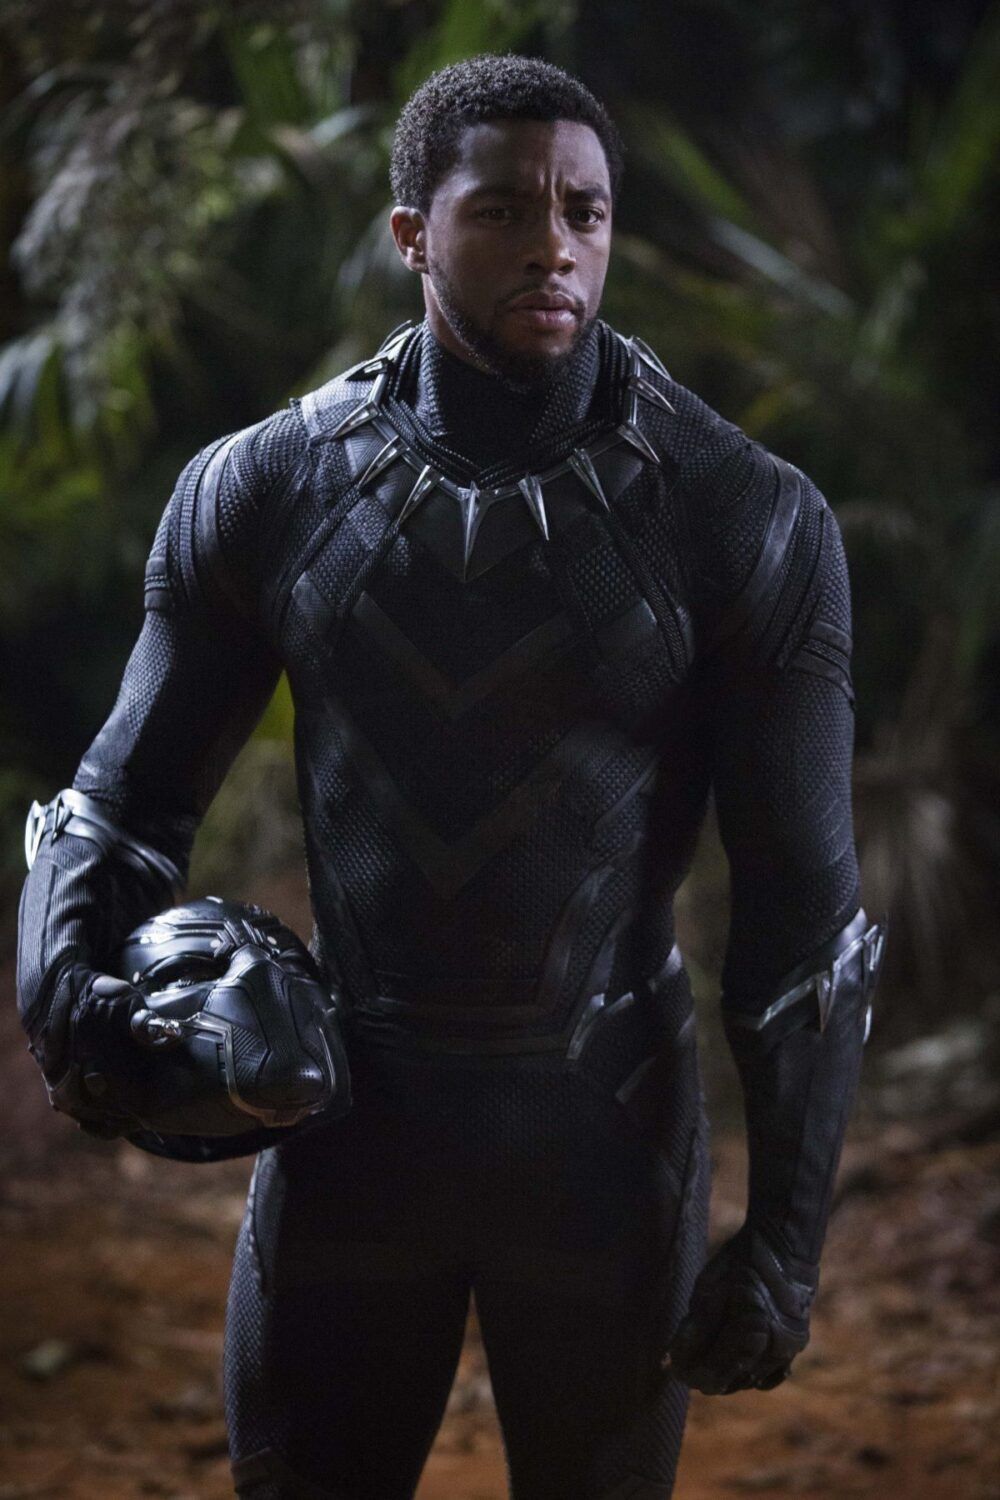 hinh anh tao hinh black panther e1583565400662 - Black Panther và câu chuyện về nhà vua mới của Marvel